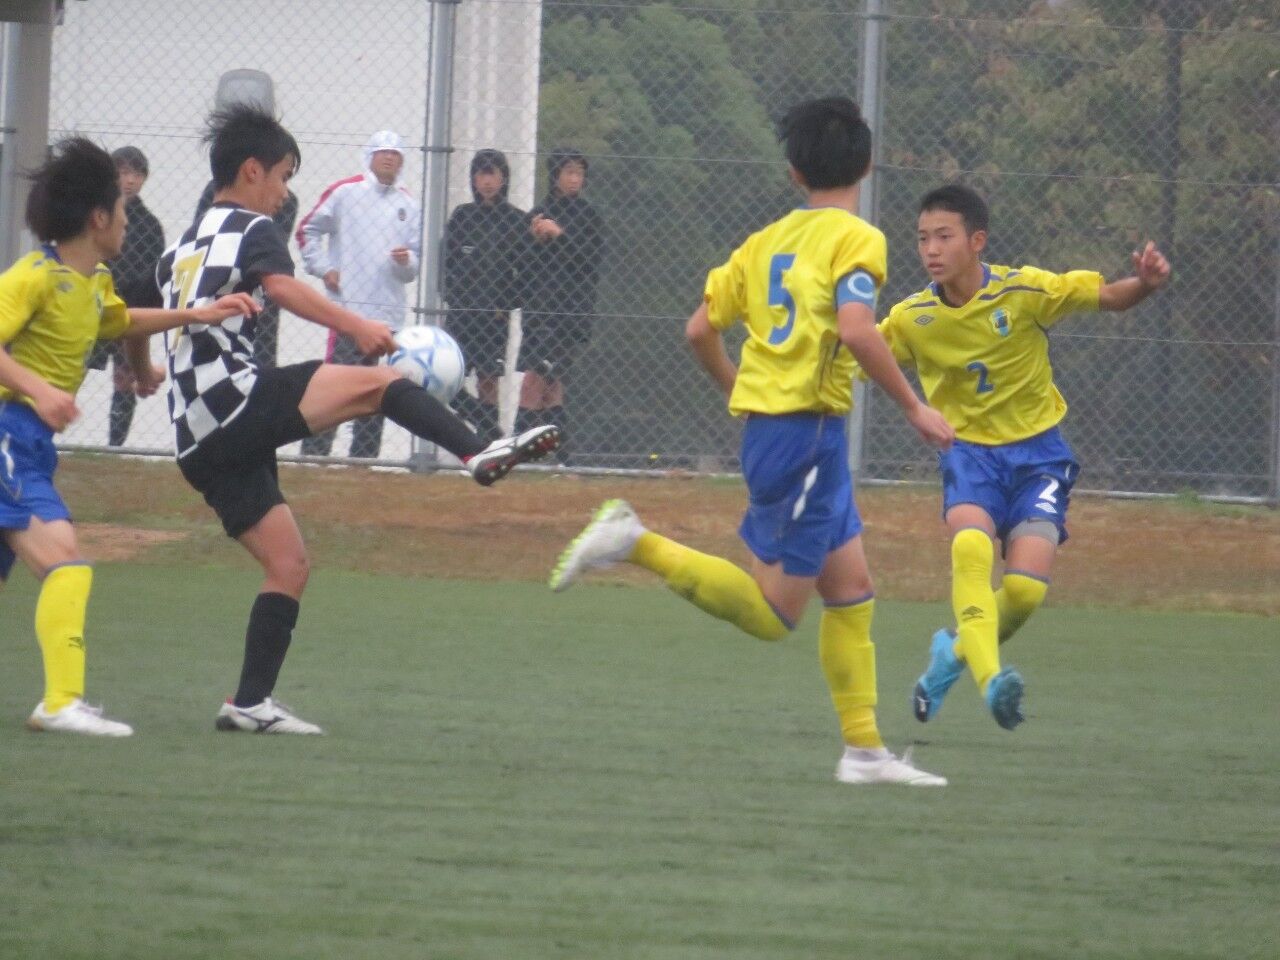 クラブユース選手権中国大会 Vs ハジャスfc Serio魂 All Plays For Goal